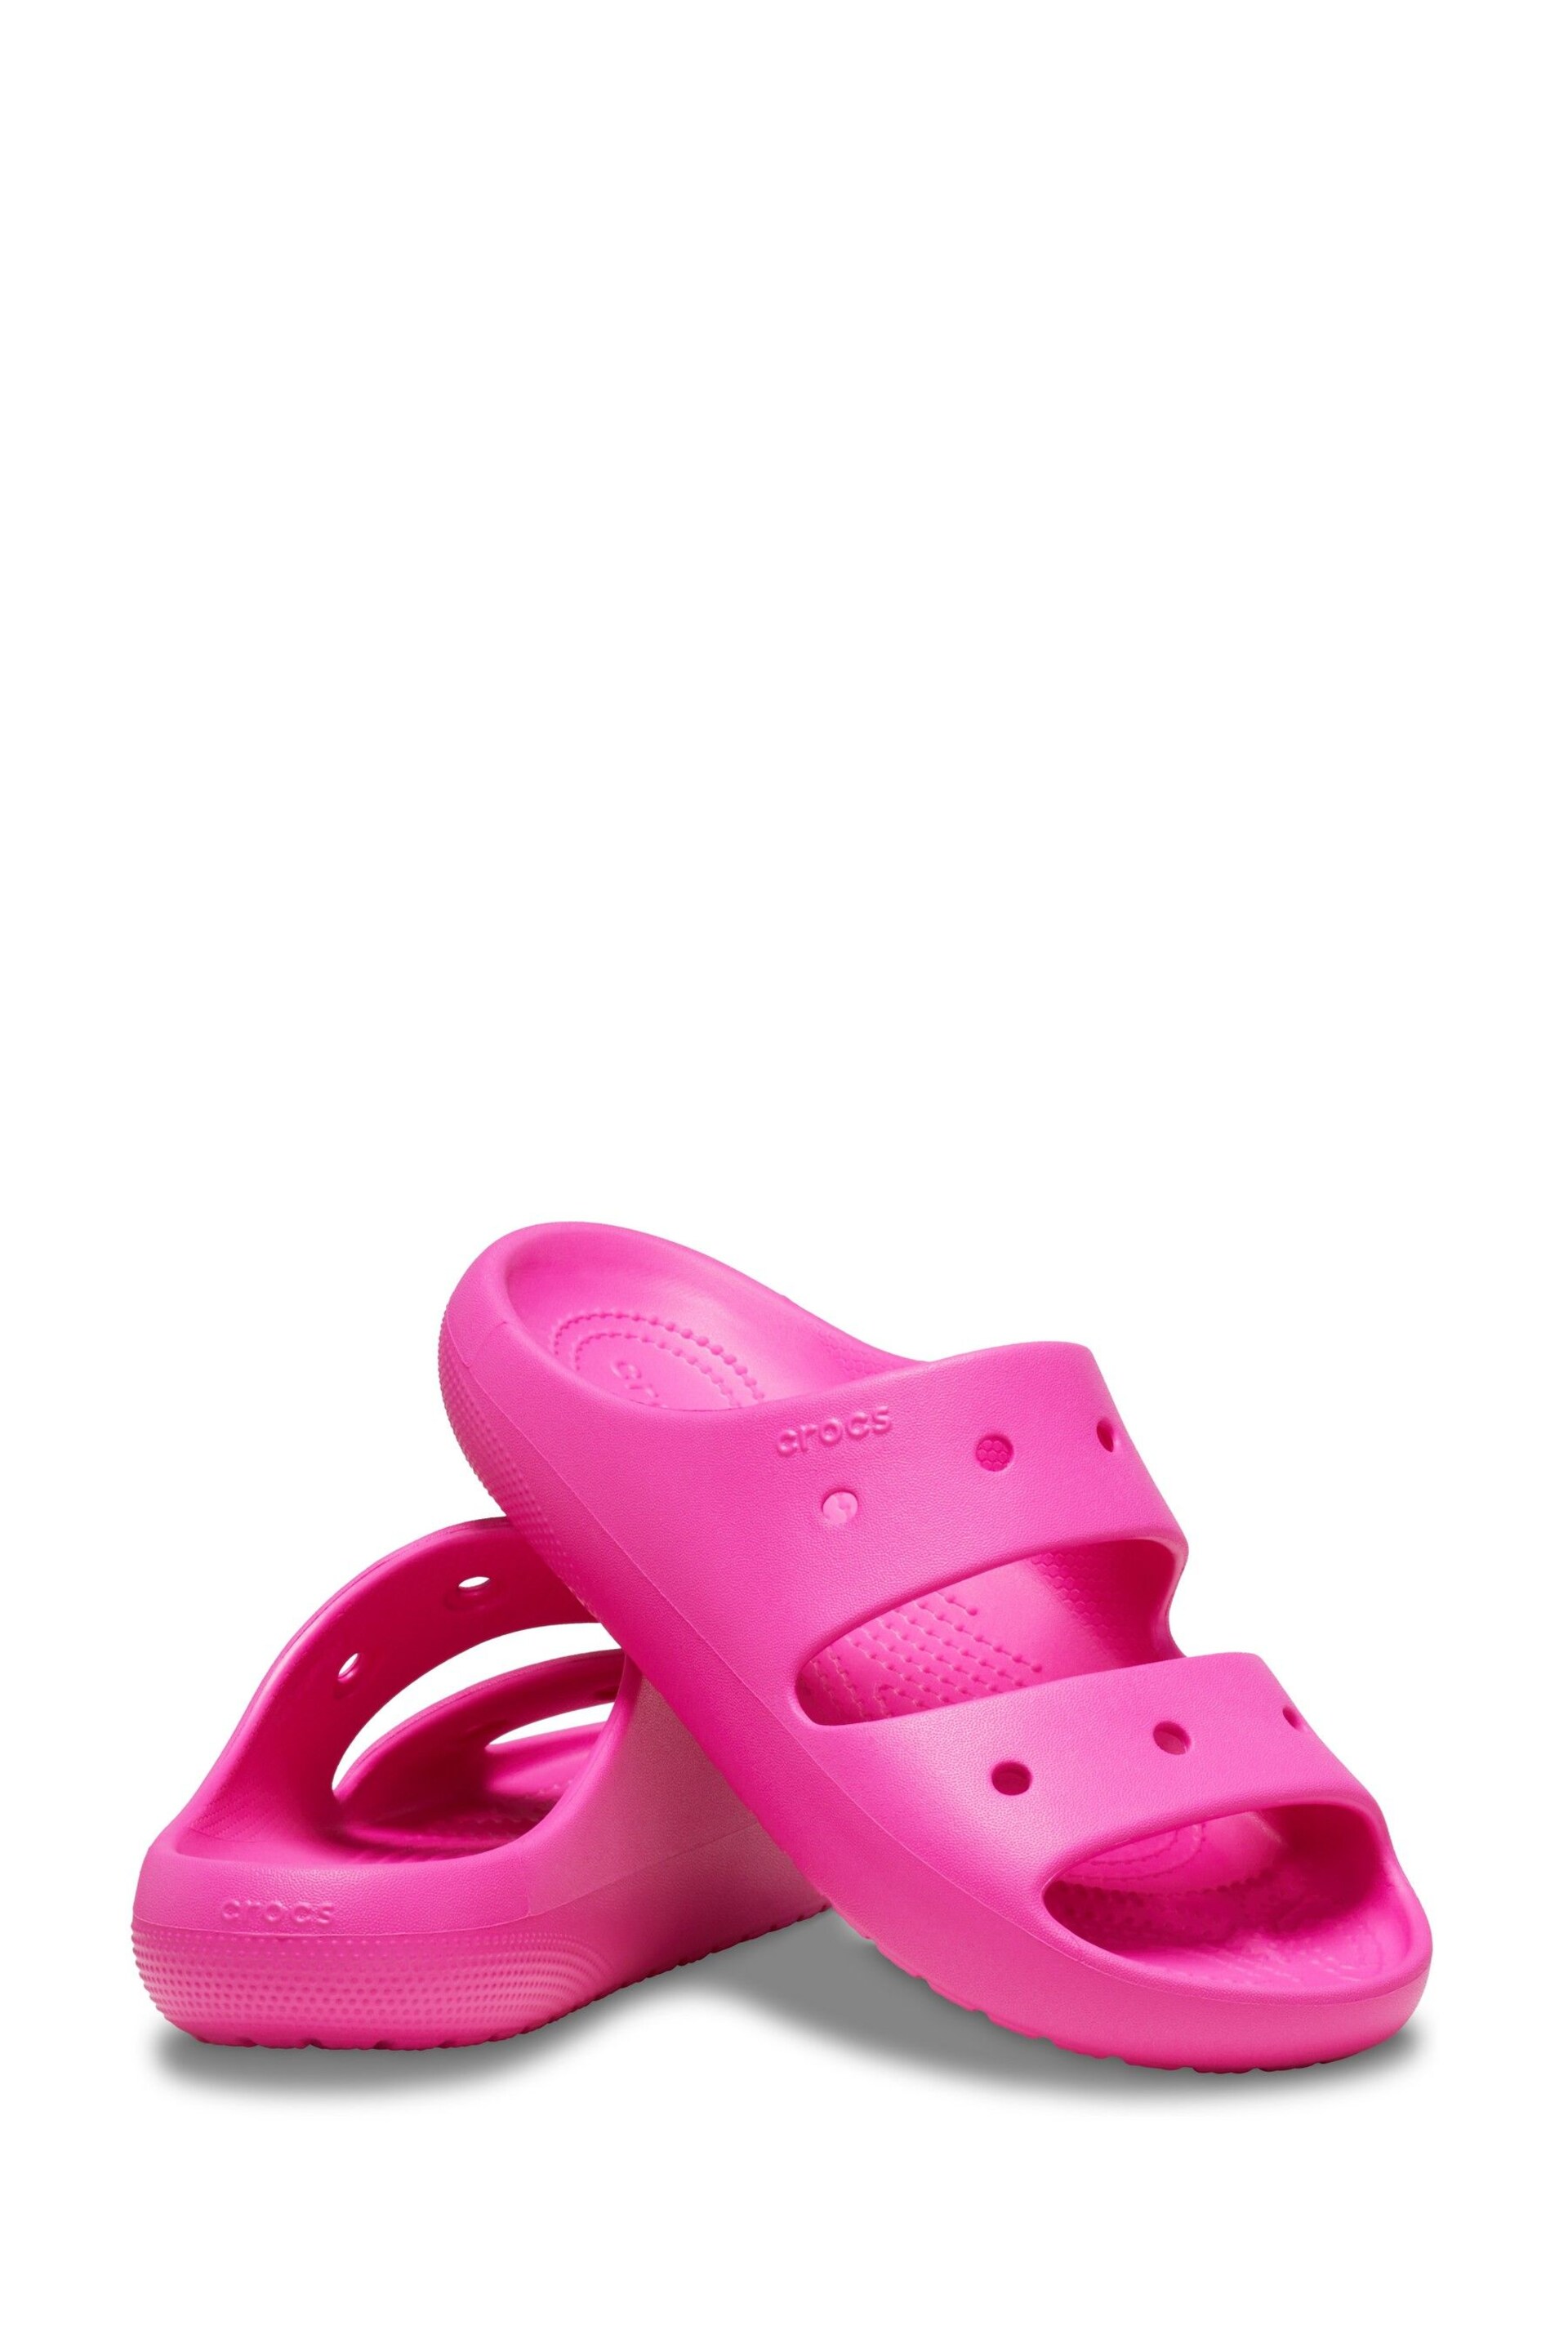 Crocs Classic Unisex Sandals - Image 3 of 6